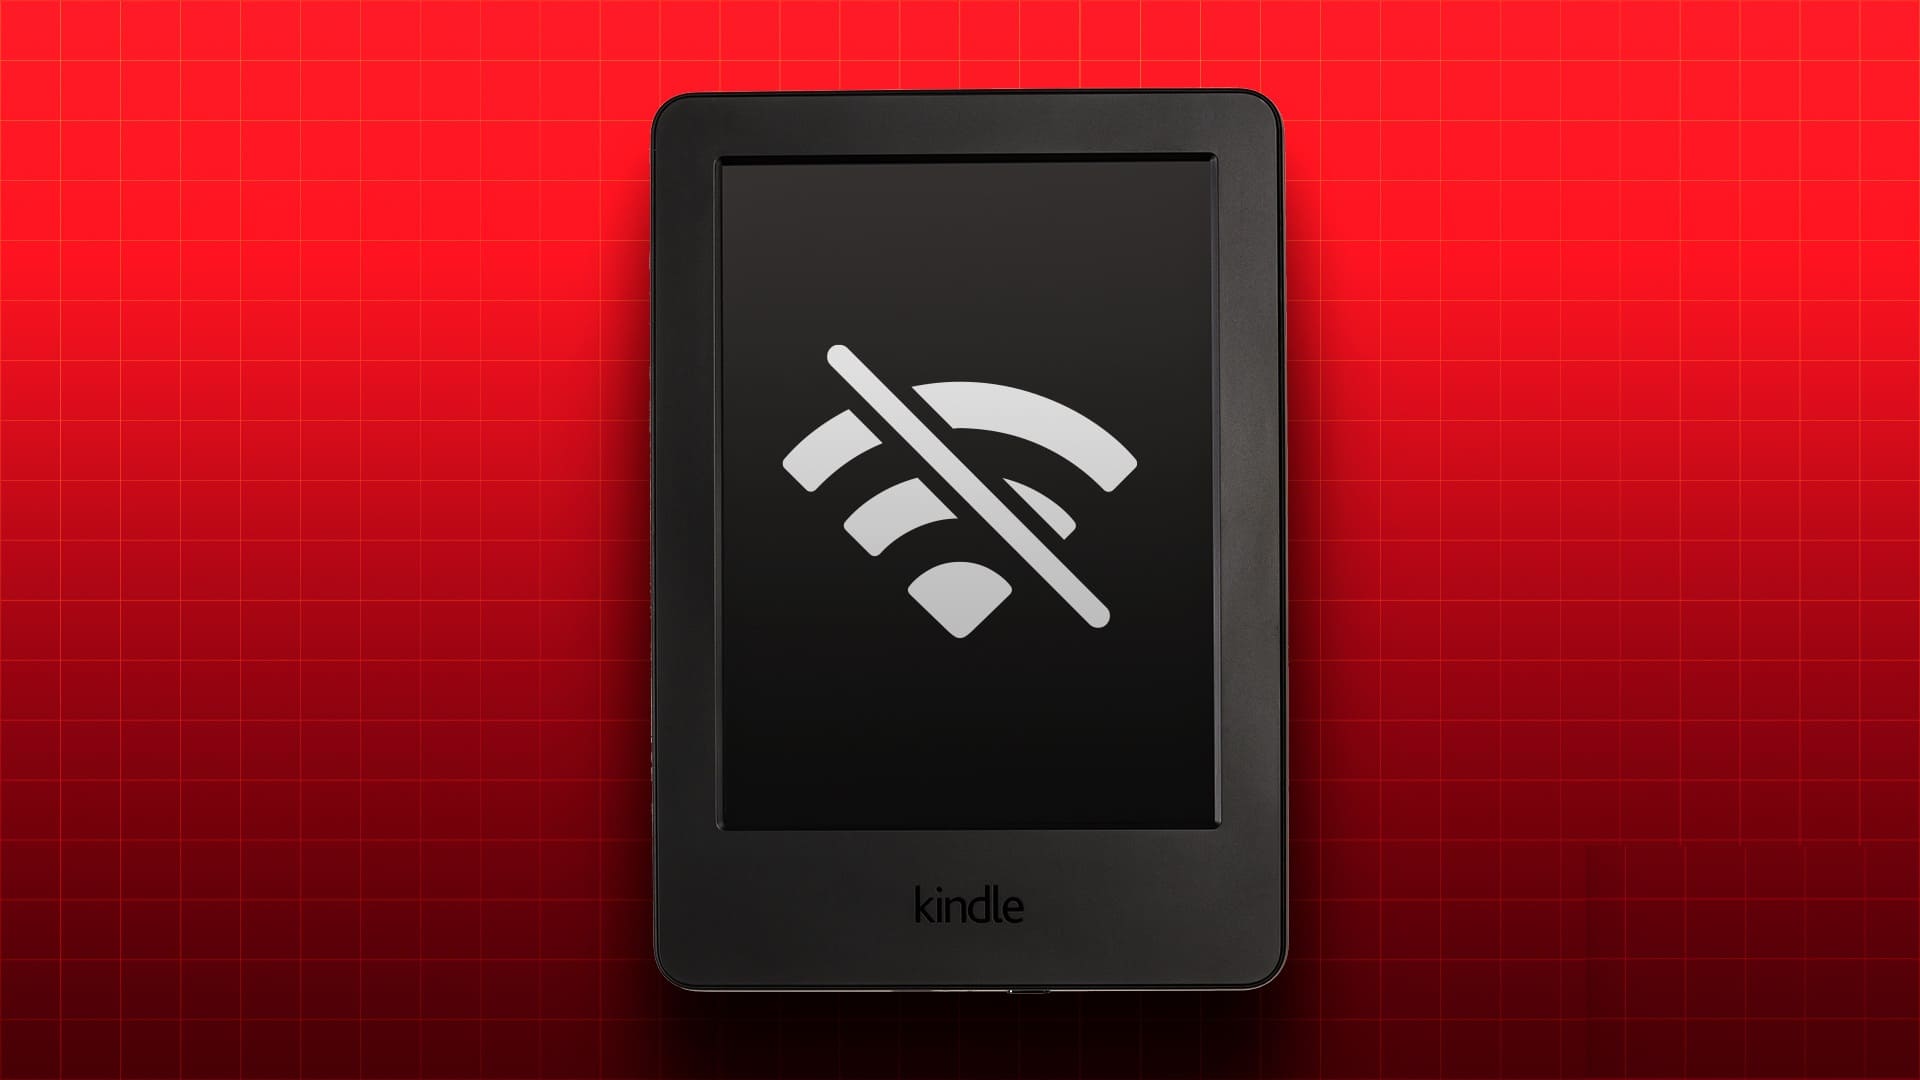 O Kindle não está conectado à rede Wi-Fi correta.
O Kindle está com problemas de conexão com a internet.